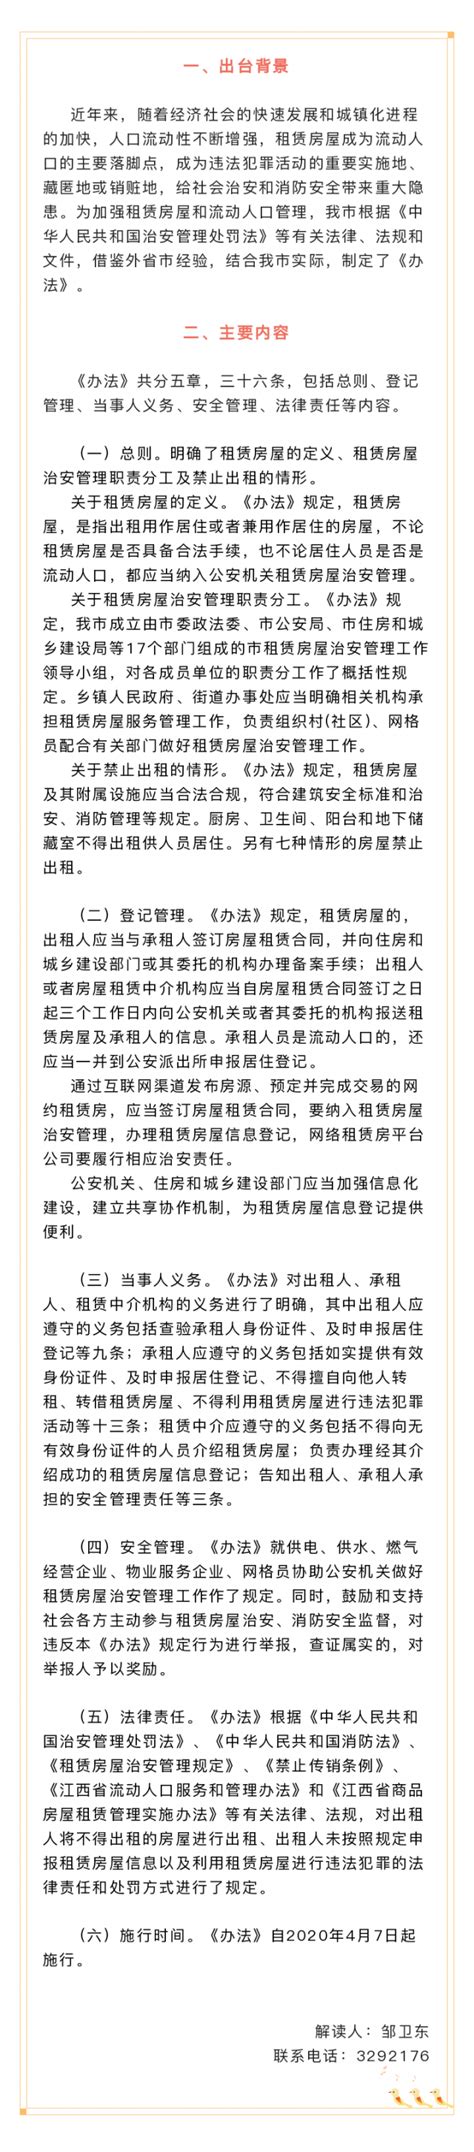 图解：宜春市人民政府办公室关于印发宜春市租赁房屋治安管理办法的通知 | 中国宜春